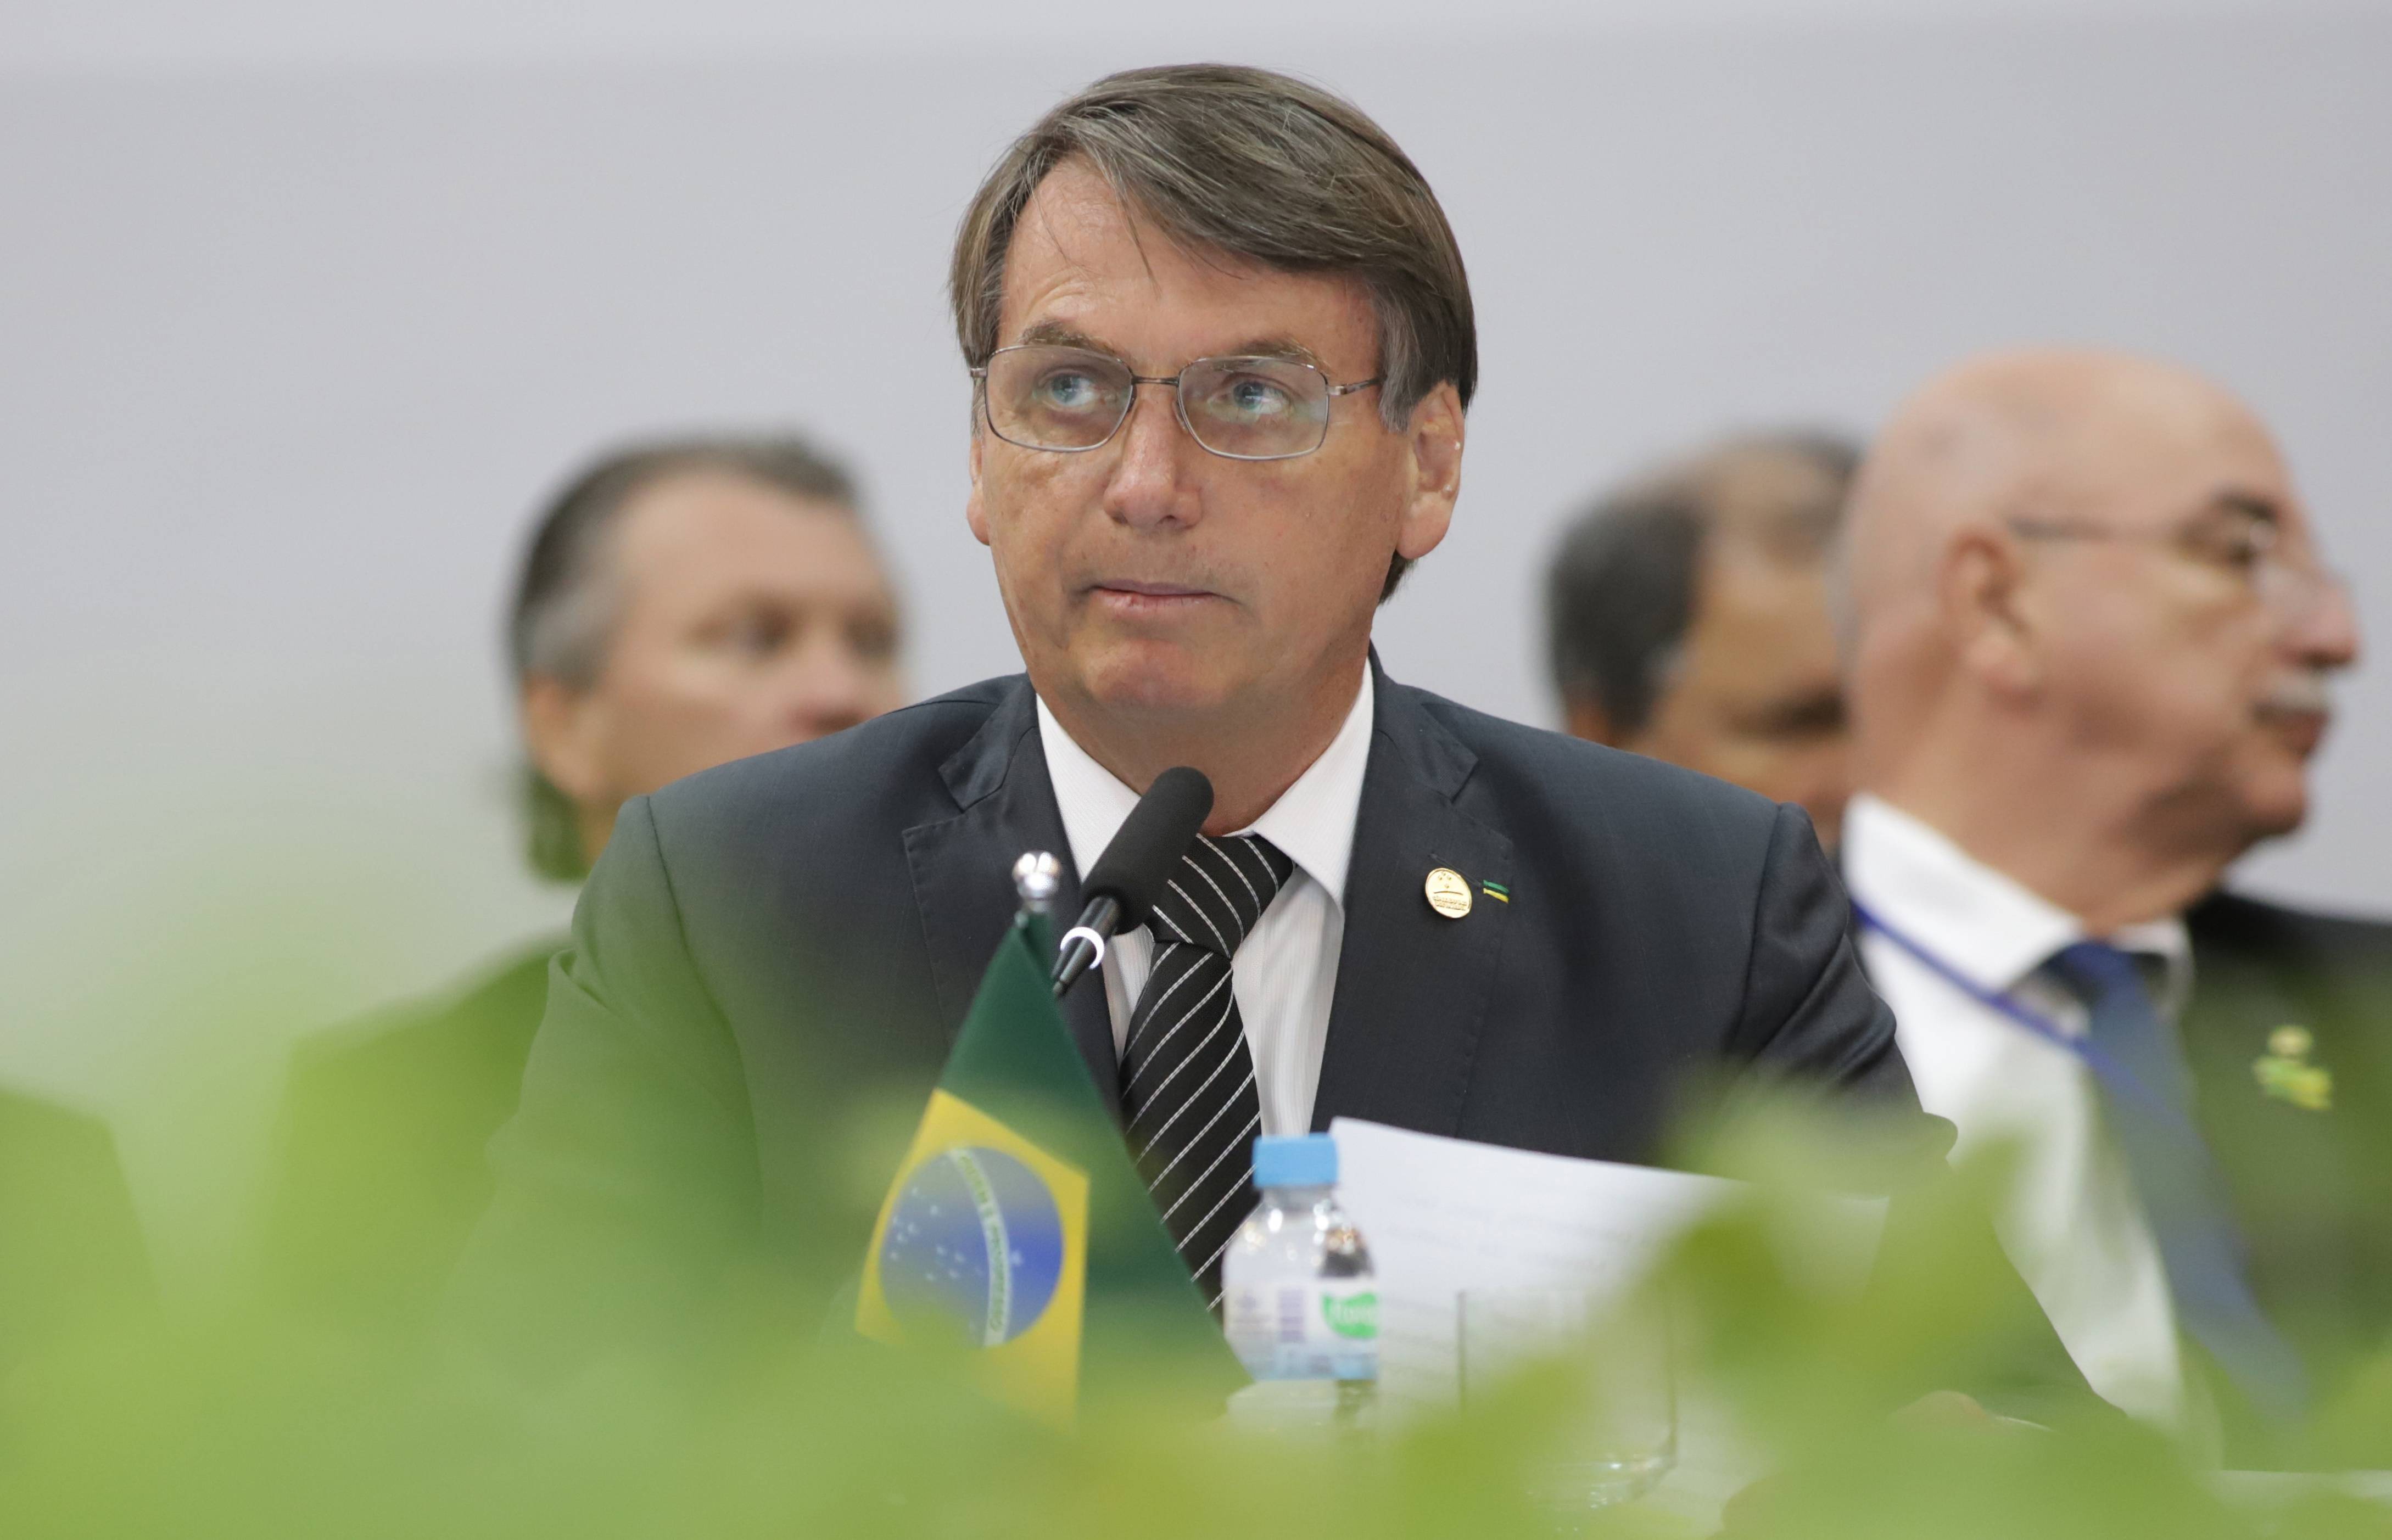 2019年12月5日,在巴西本图贡萨尔维斯,巴西总统博索纳罗(前)出席会议